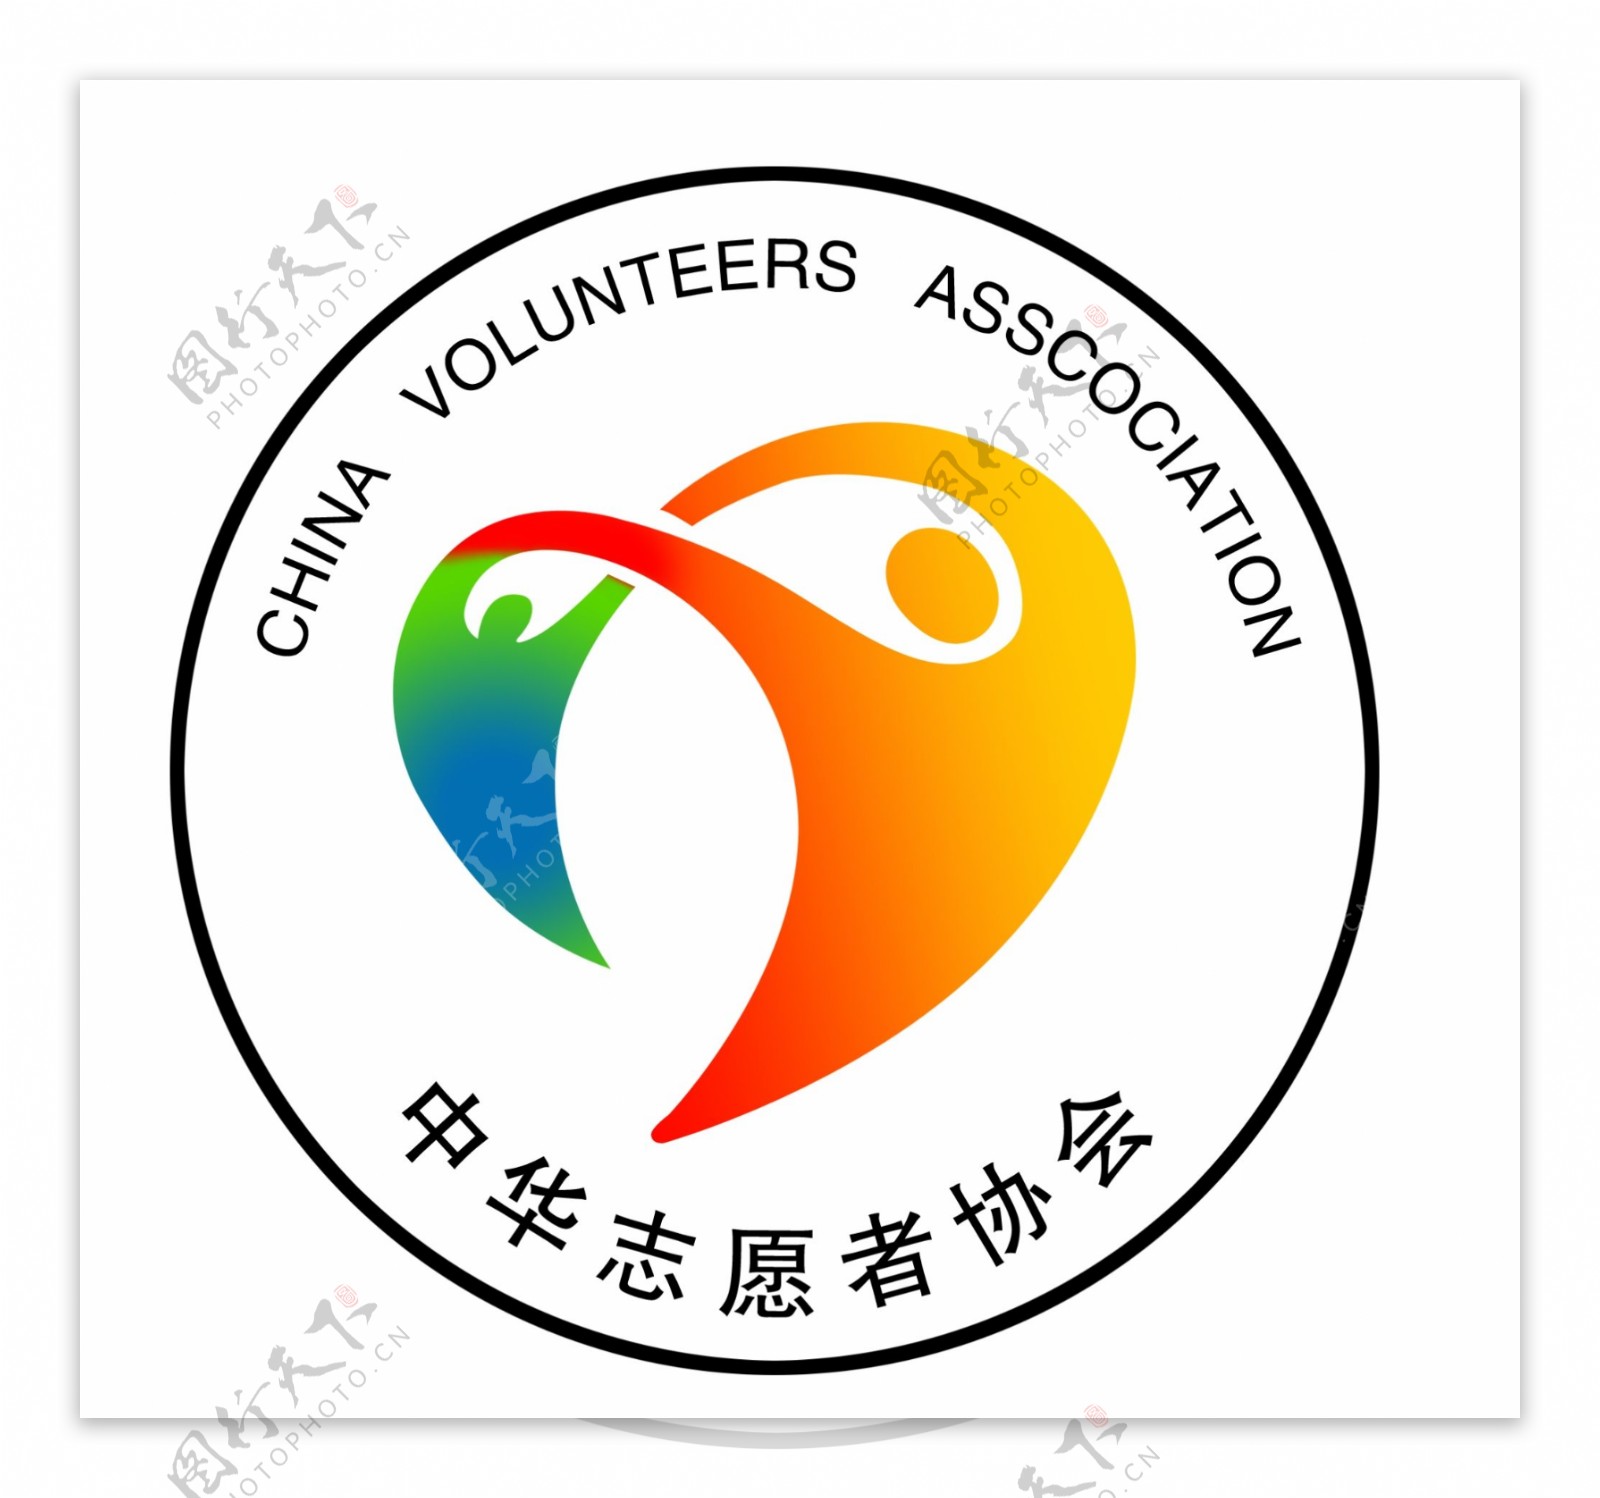 中华志愿者协会图片